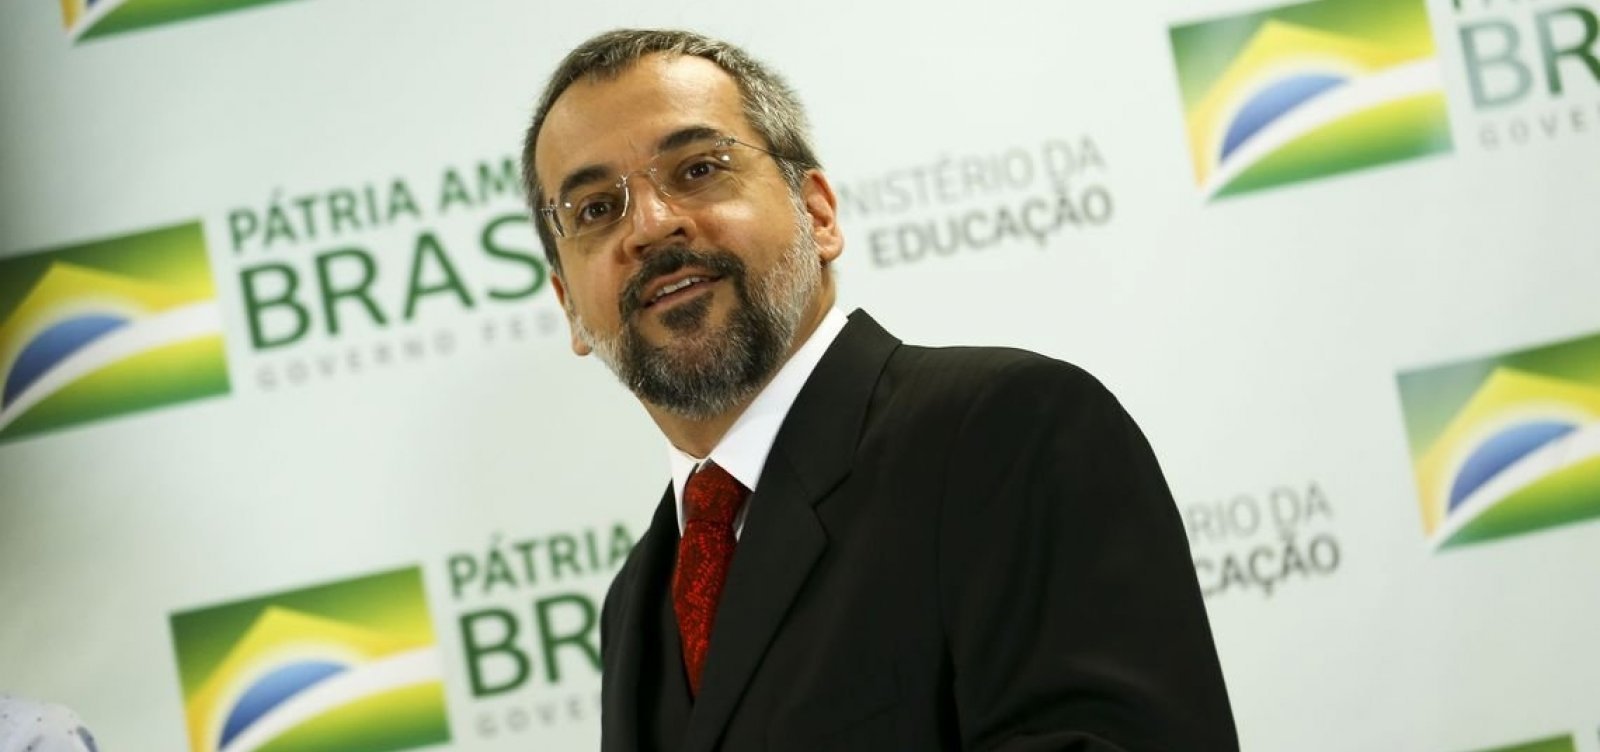 Alvo de inquérito no STF, Abraham Weintraub sai do Brasil